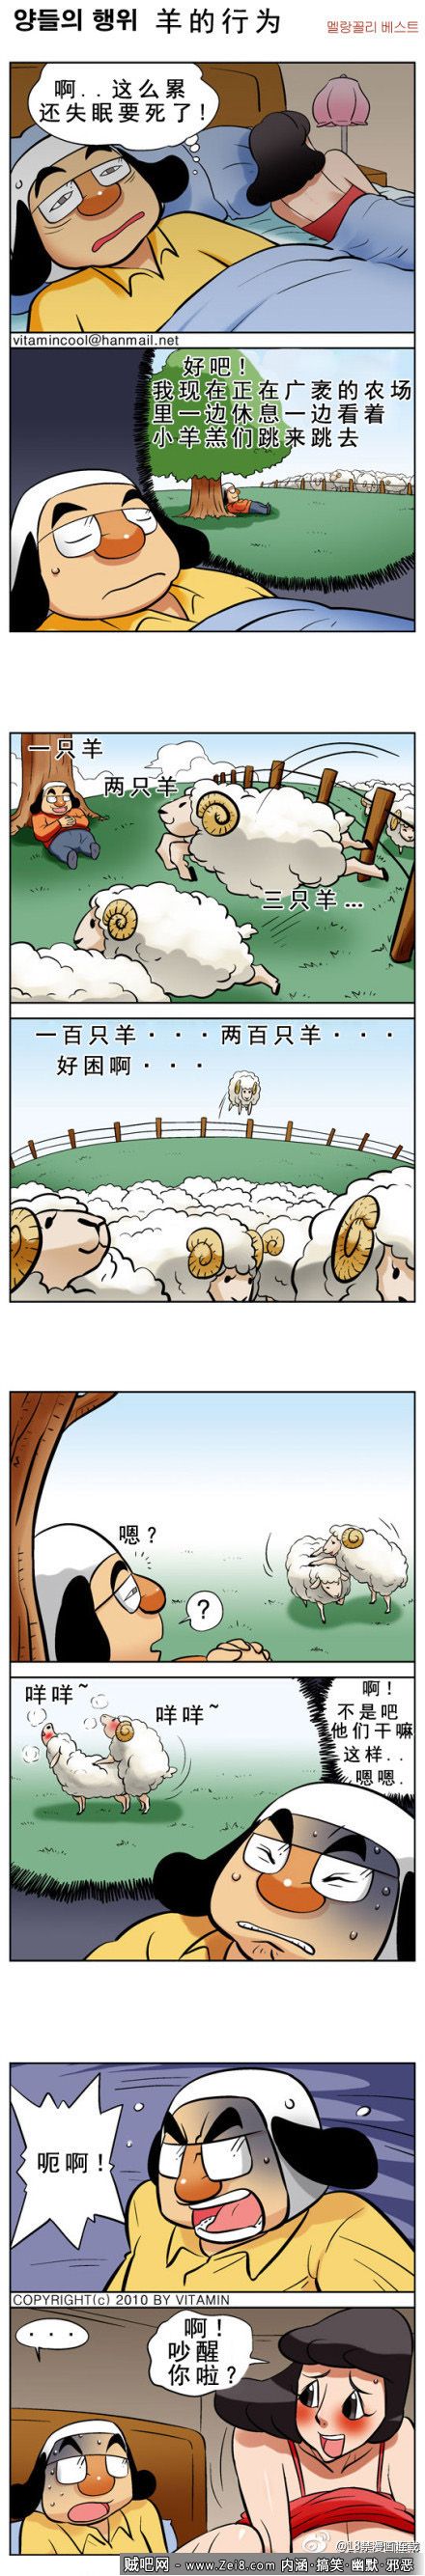 [邪恶漫画之数绵羊]：幸福生活